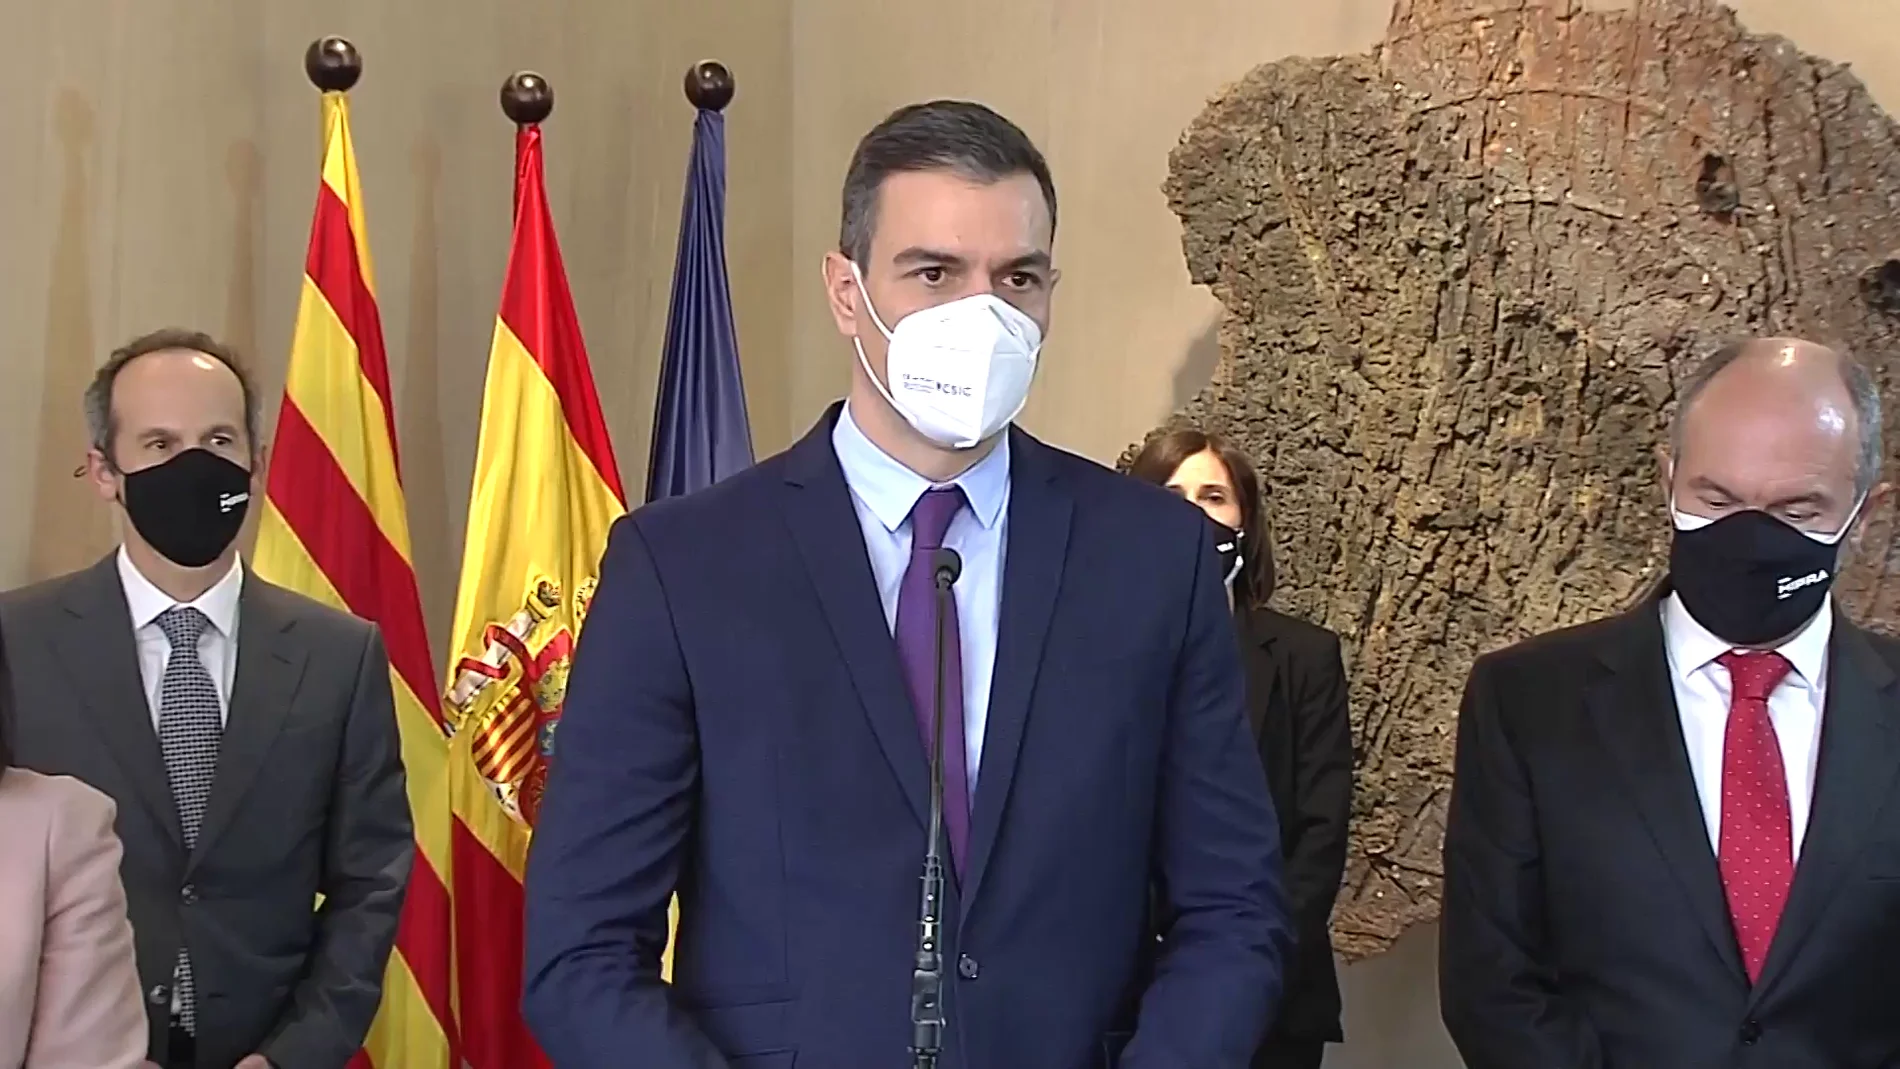 A3 Noticias 2 (16-01-21) Pedro Sánchez: 'Vamos a garantizar en este año la vacunación de todos los compatriotas'